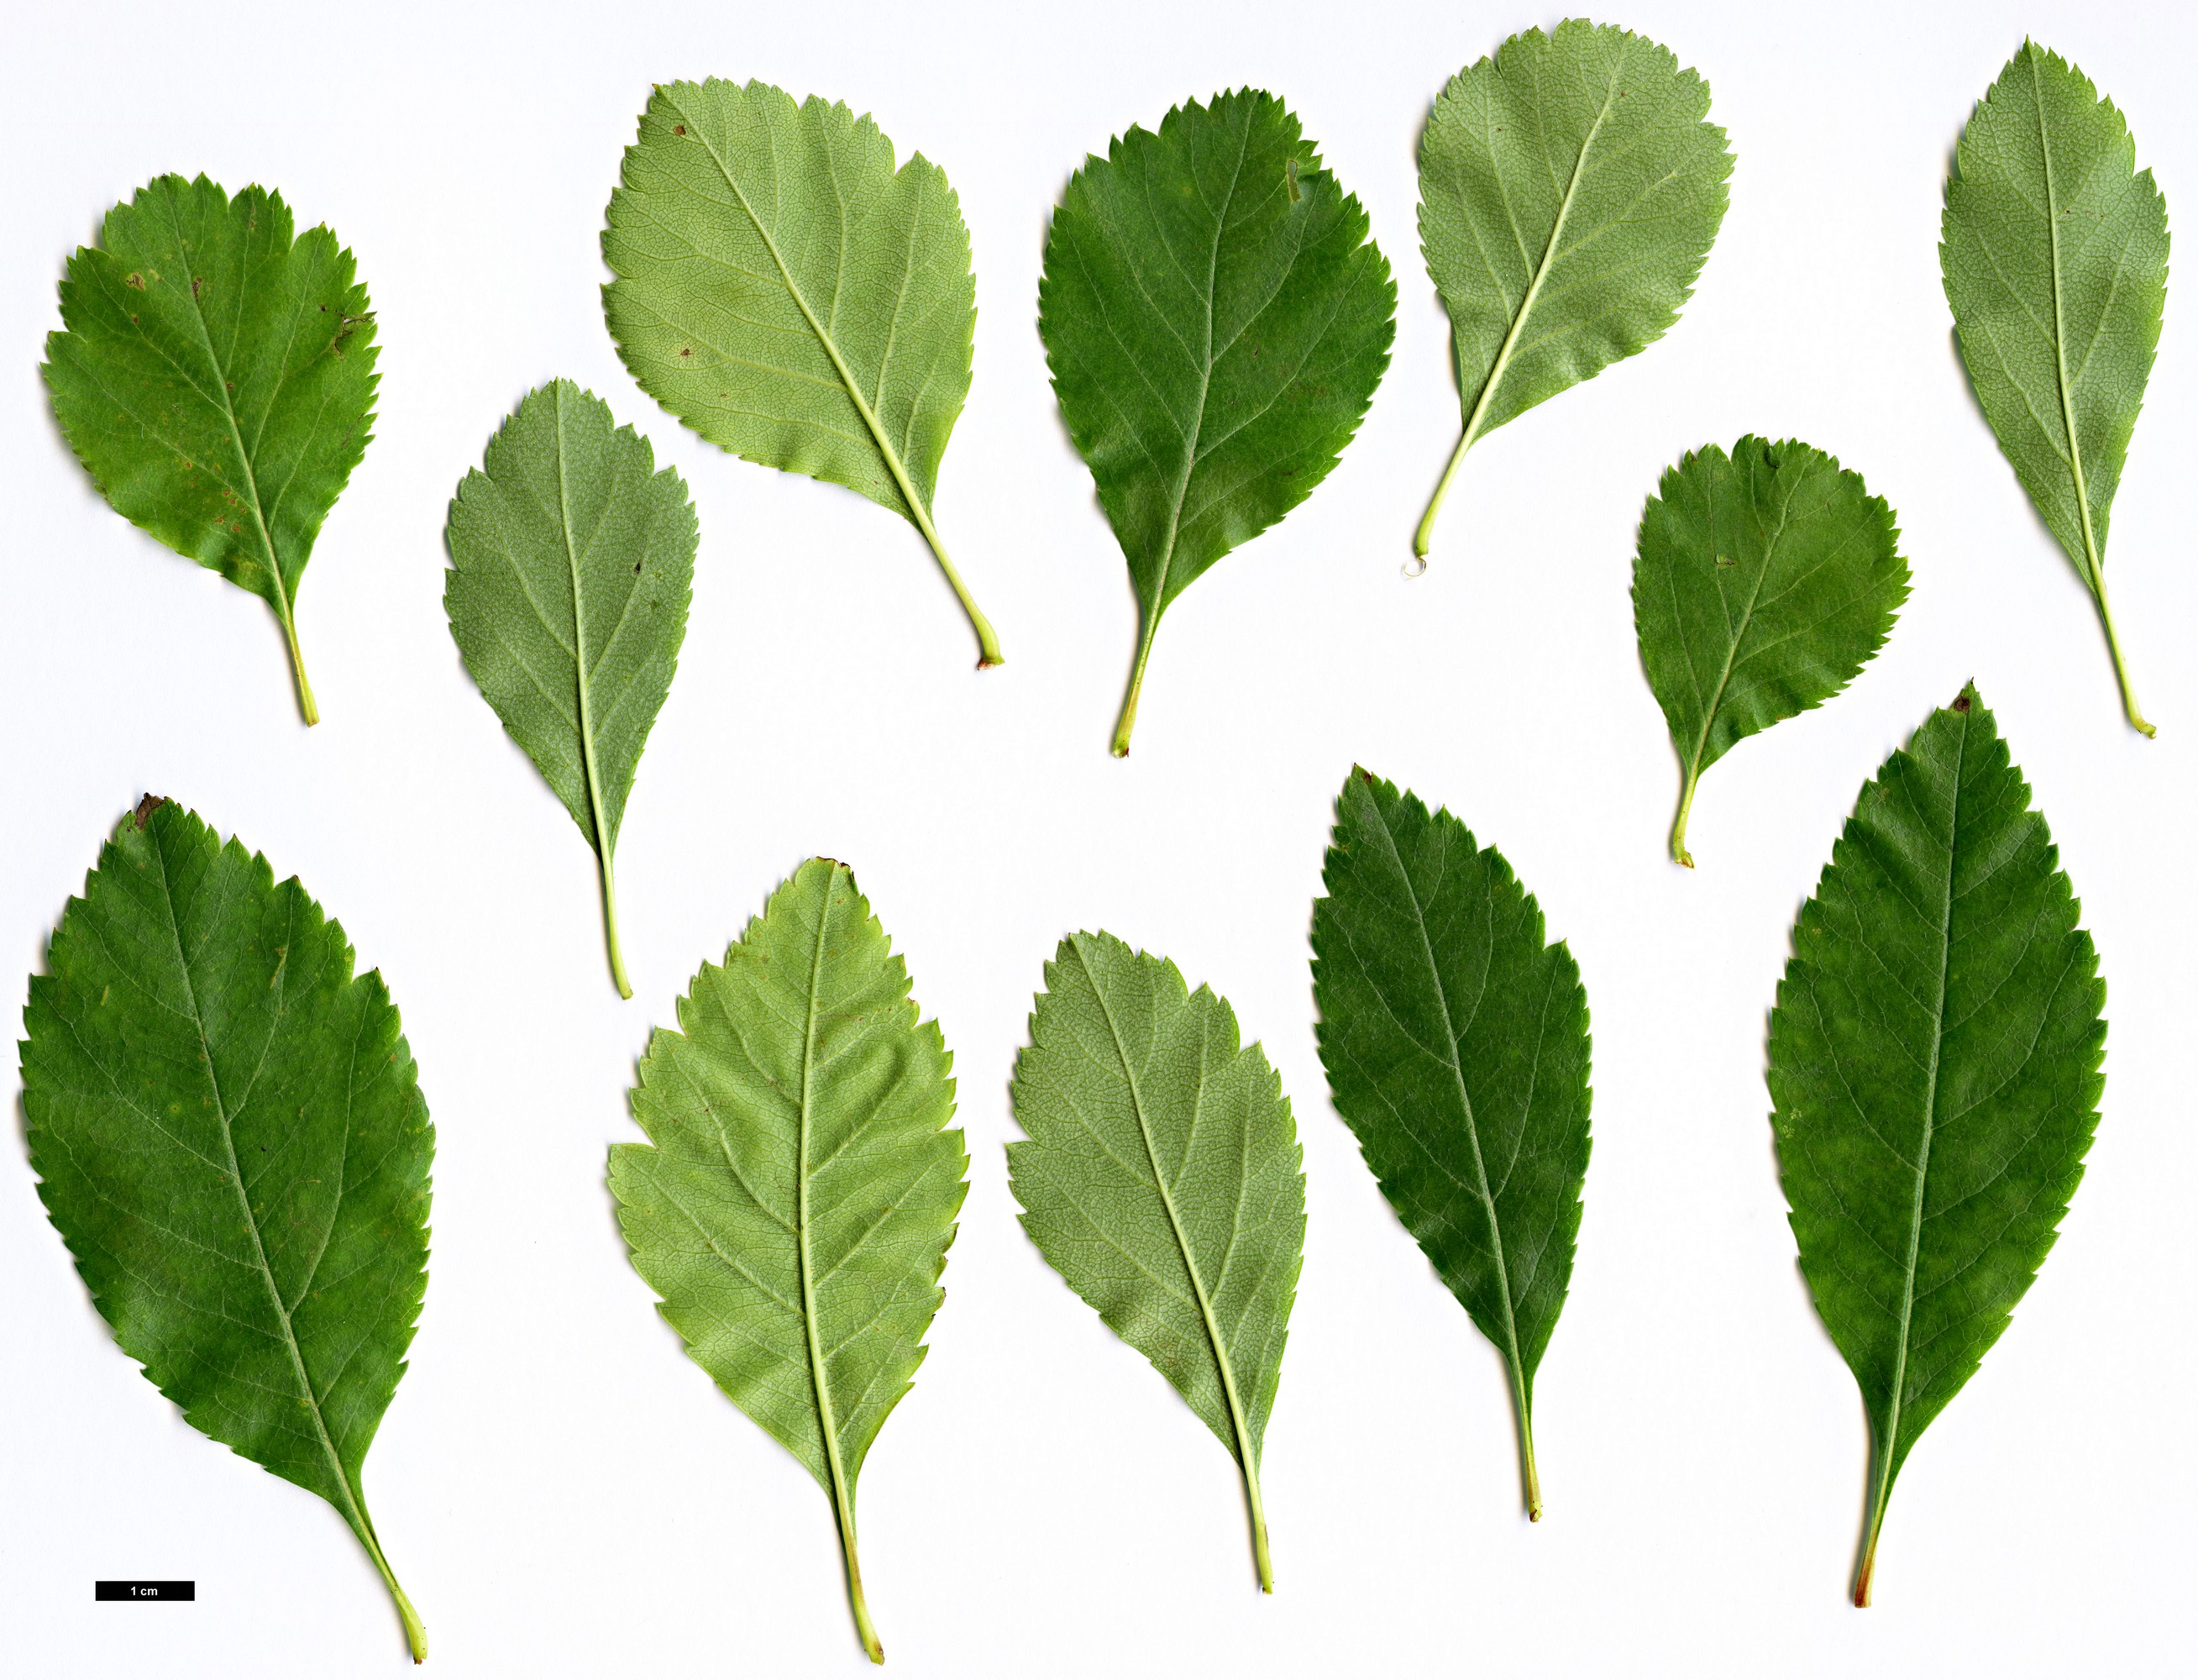 High resolution image: Family: Rosaceae - Genus: Crataegus - Taxon: suksdorfii